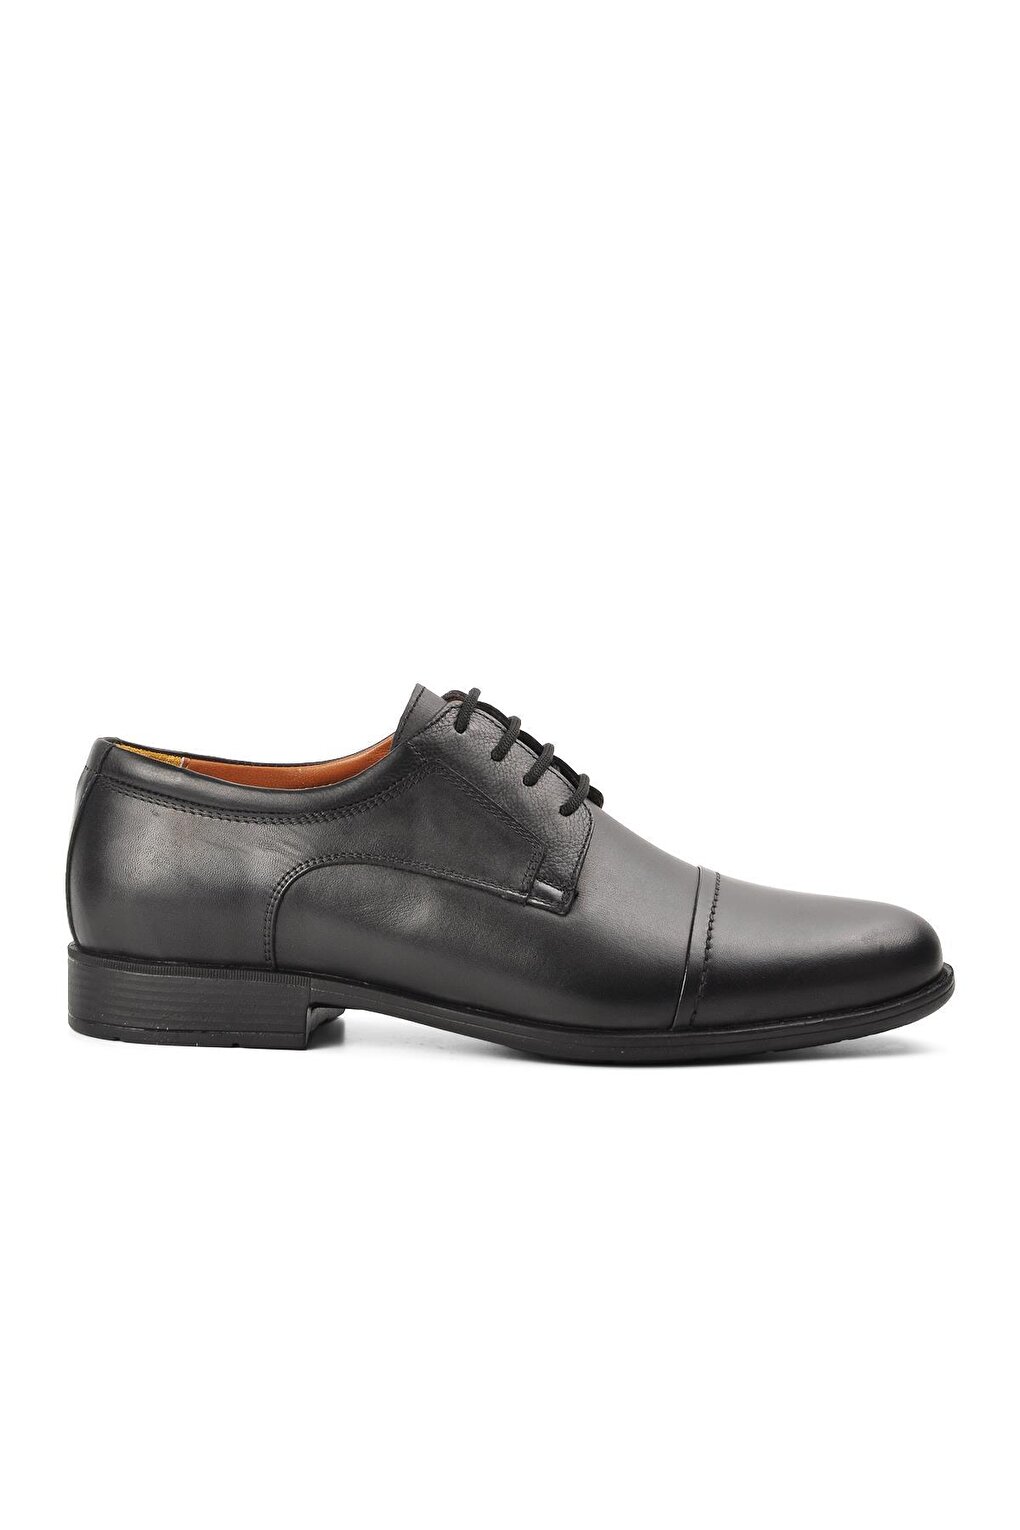 Черные мужские классические туфли из натуральной кожи на шнуровке 693 Ayakmod